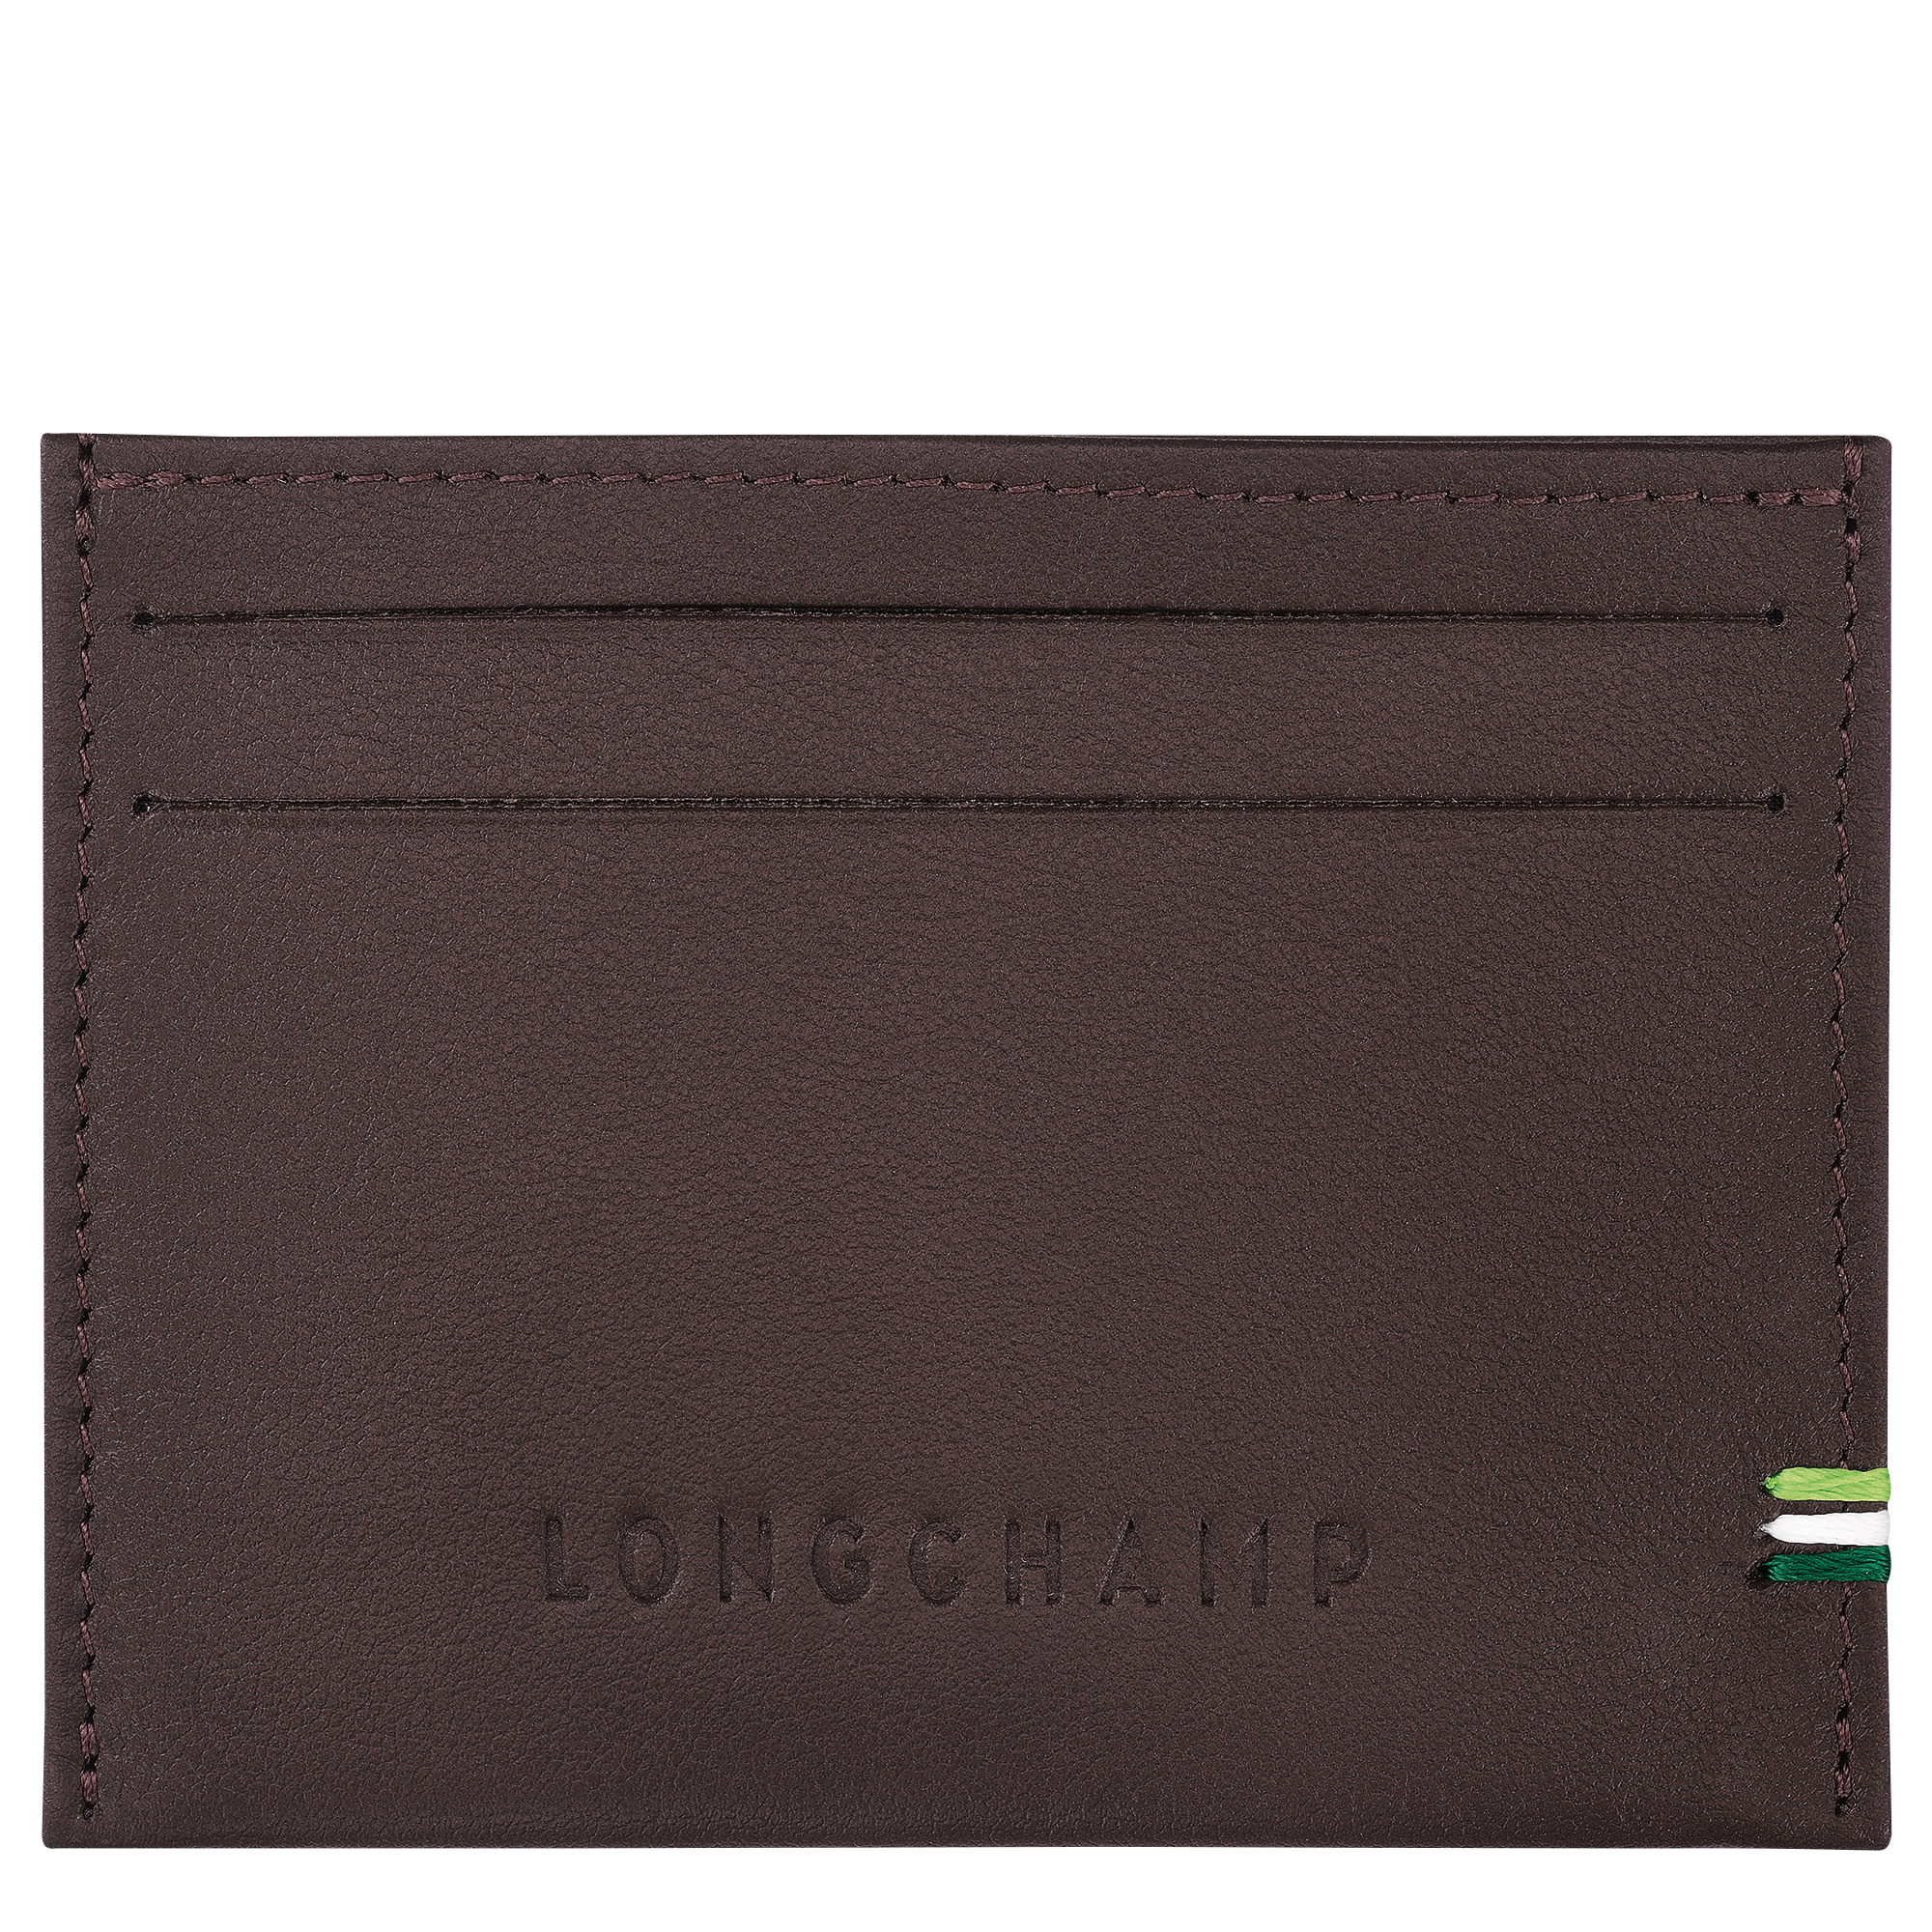 Longchamp sur Seine 卡片夾, 摩卡色